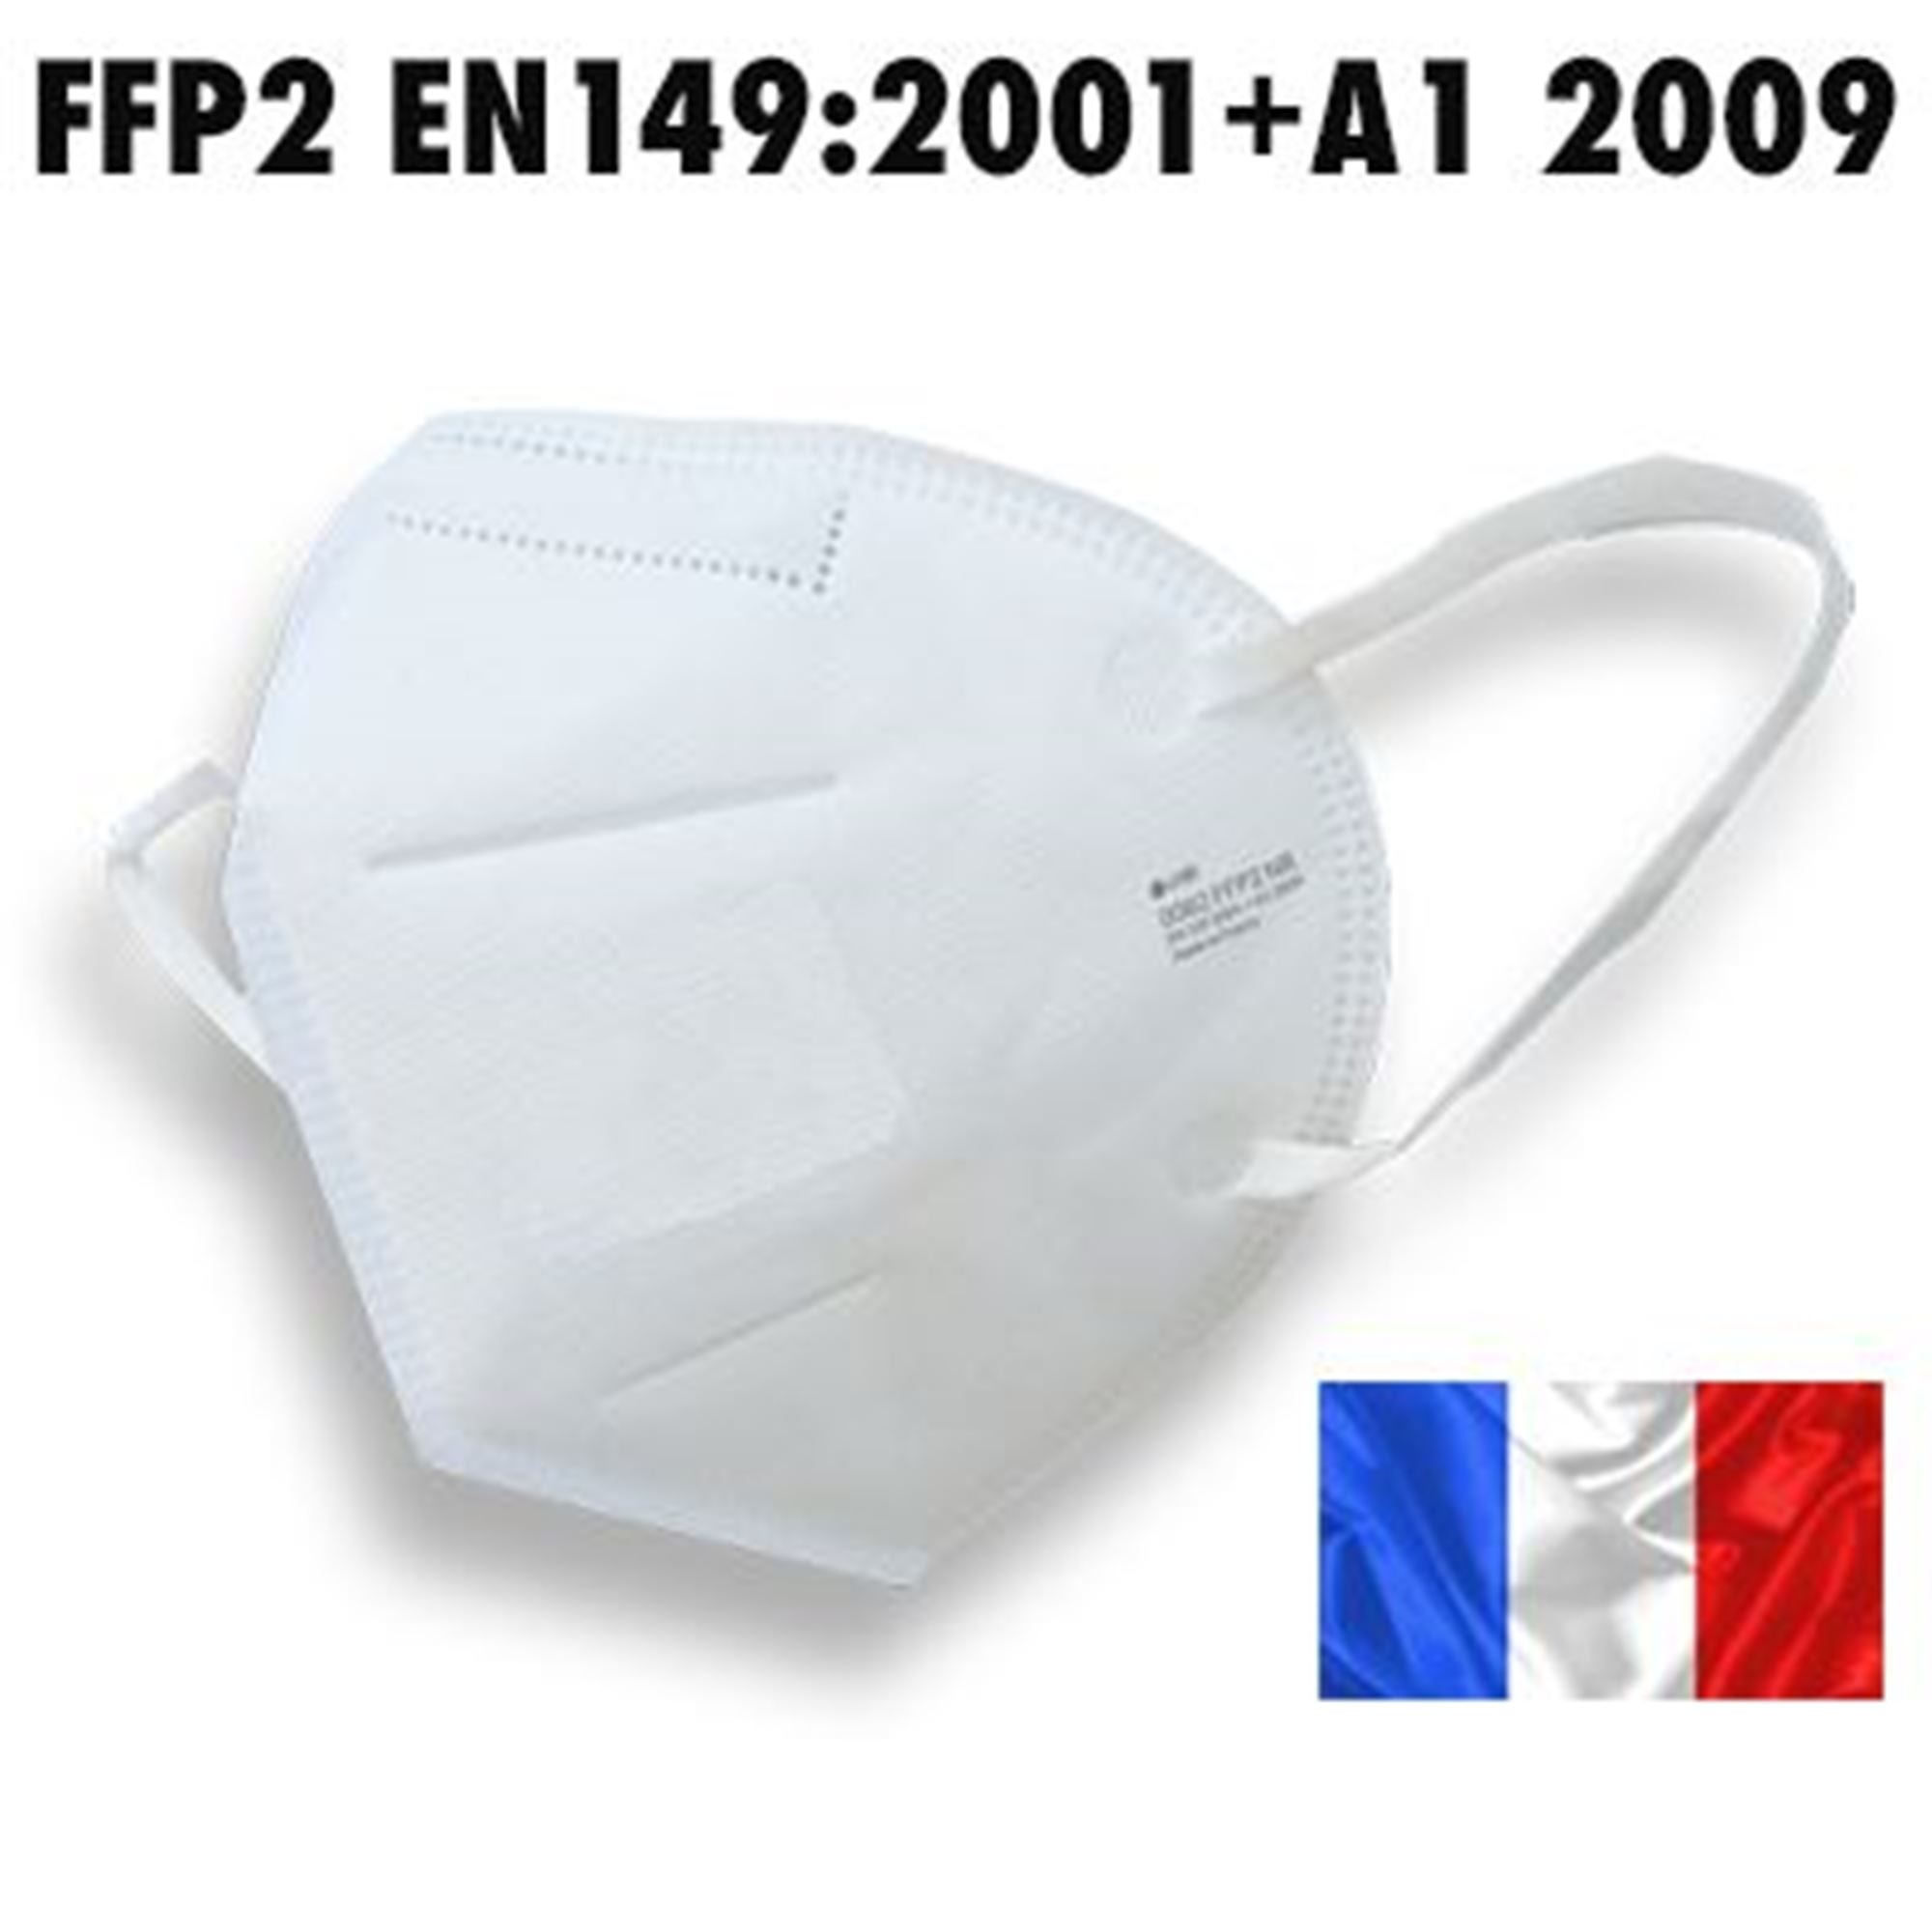 Masques 5 pièces FFP2 - Noir - Fabriqué dans l'UE 